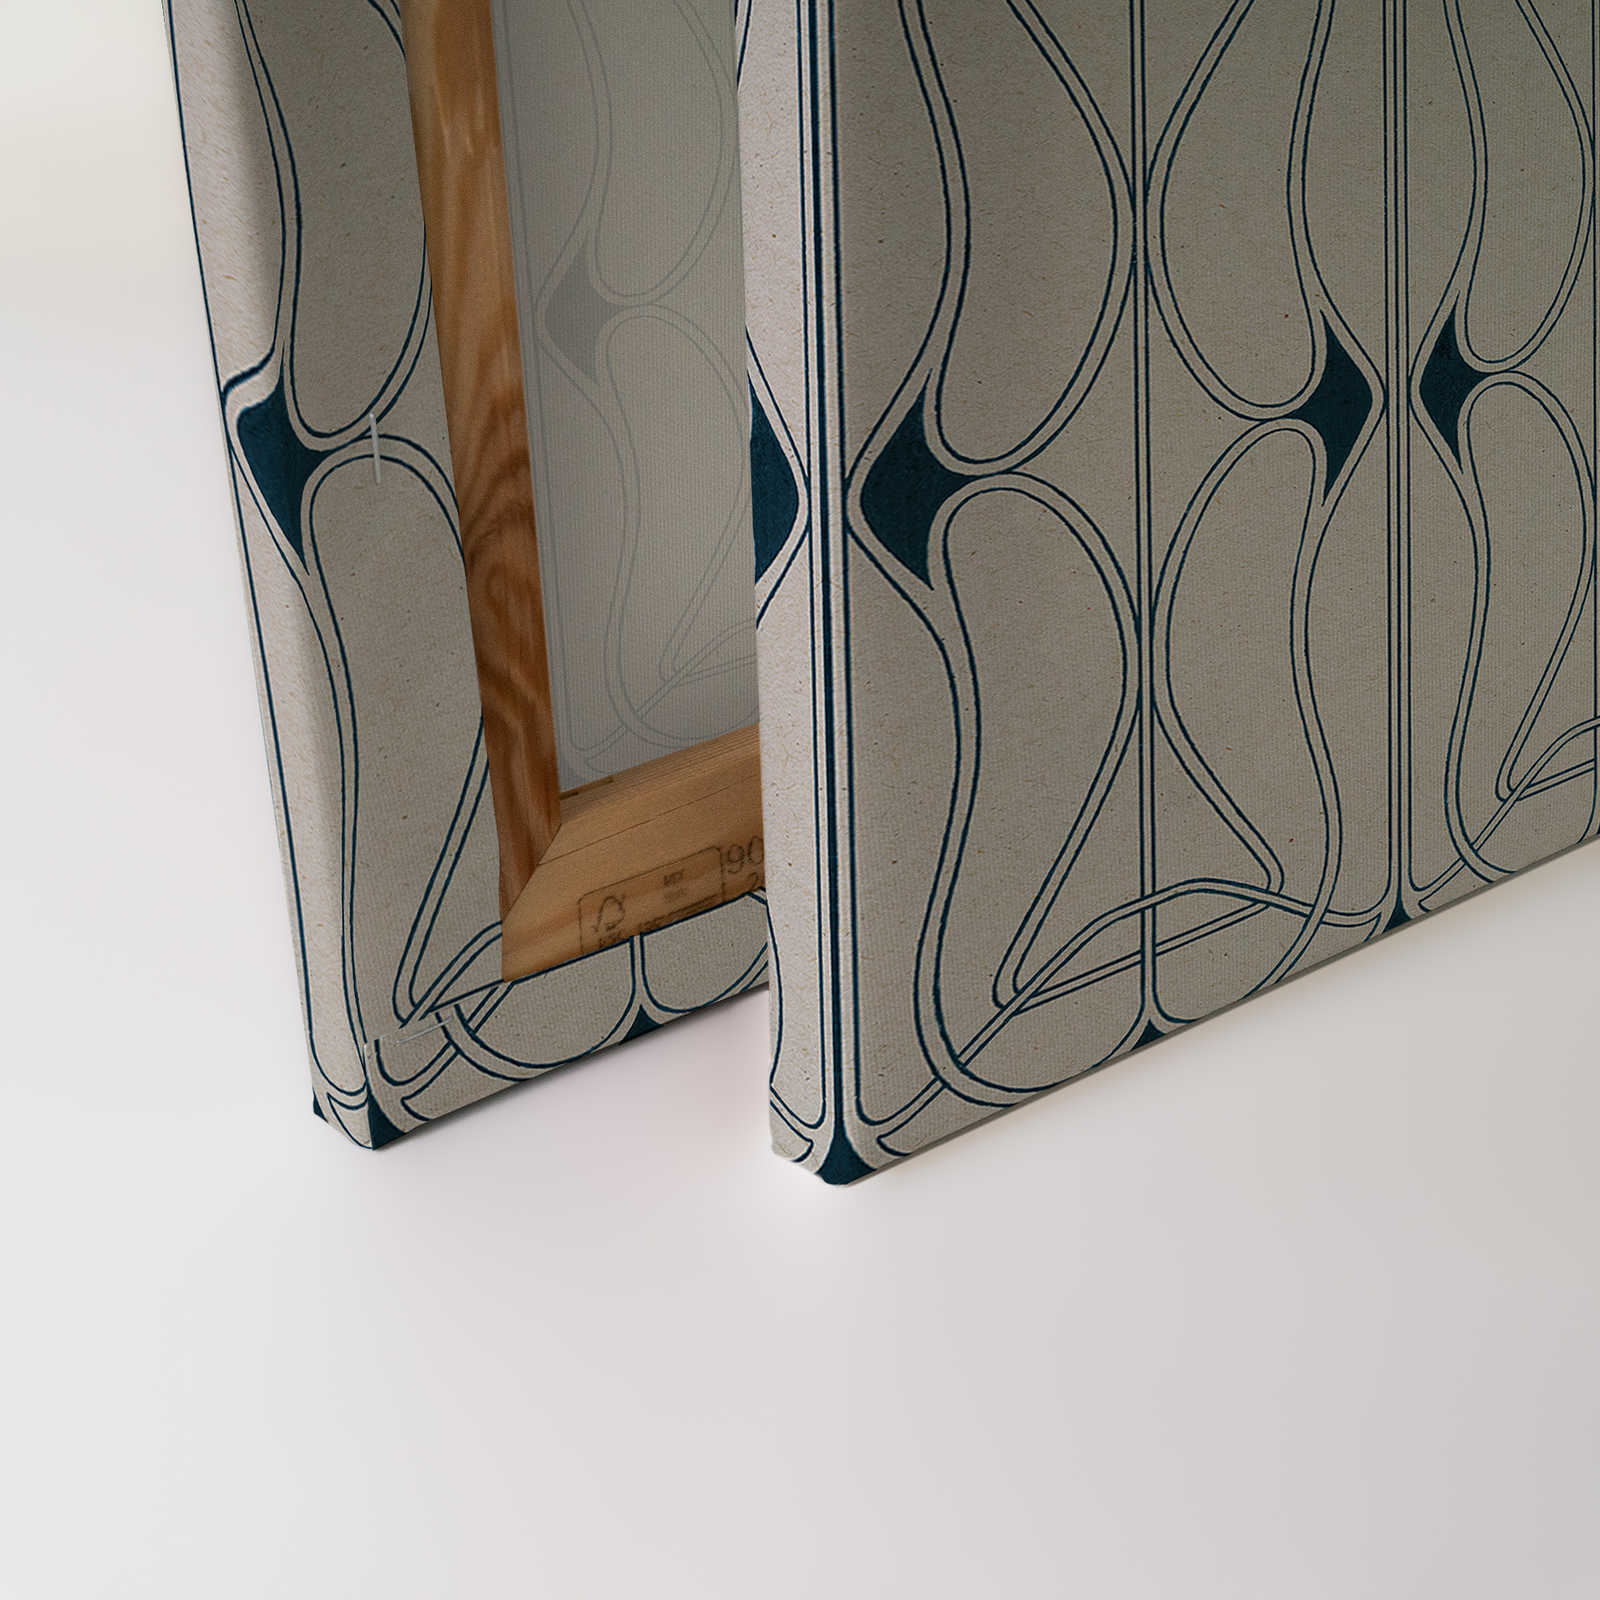             Astoria 1 - Leinwandbild Art Nouveau Muster Grau & Schwarzblau – 1,20 m x 0,80 m
        